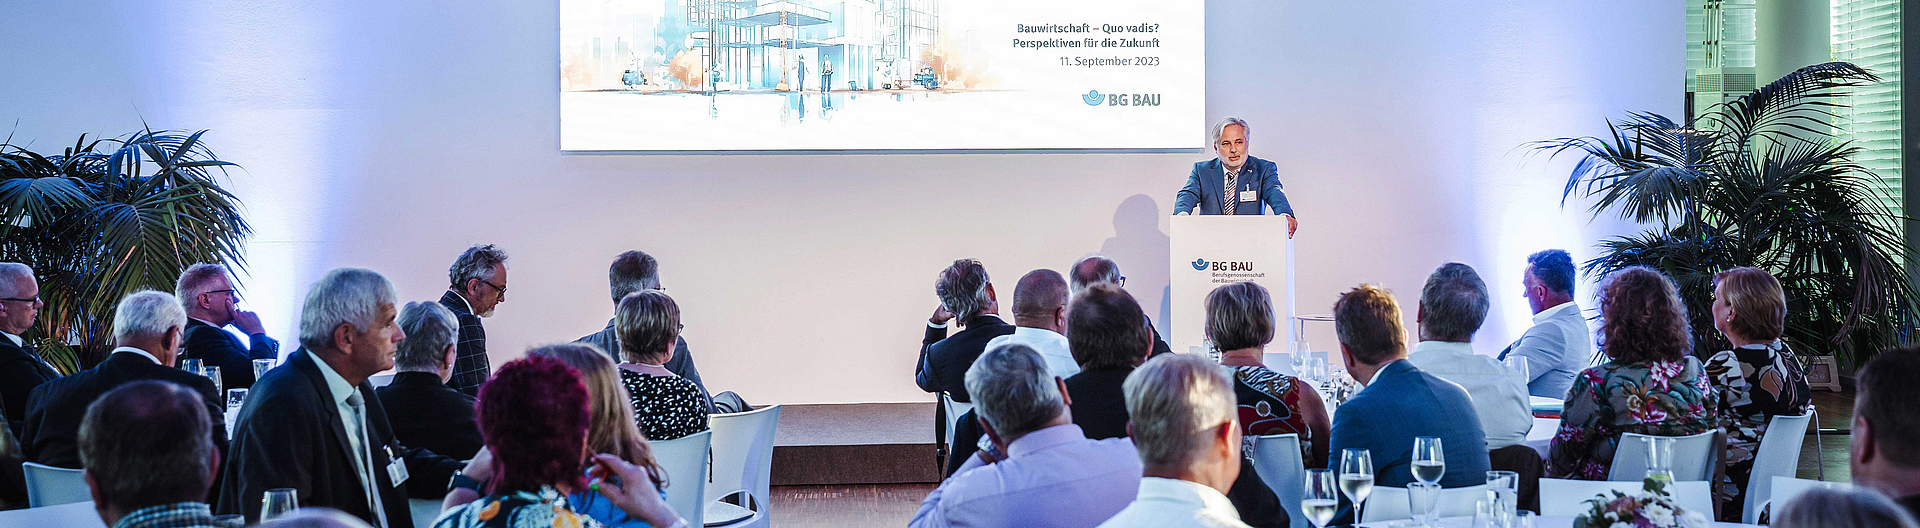 Hansjörg Schmidt-Kraepelin (Hauptgeschäftsführer der BG BAU) beim Symposium der BG BAU „Bauwirtschaft – Quo vadis? Perspektiven für die Zukunft“ am 11. September 2023